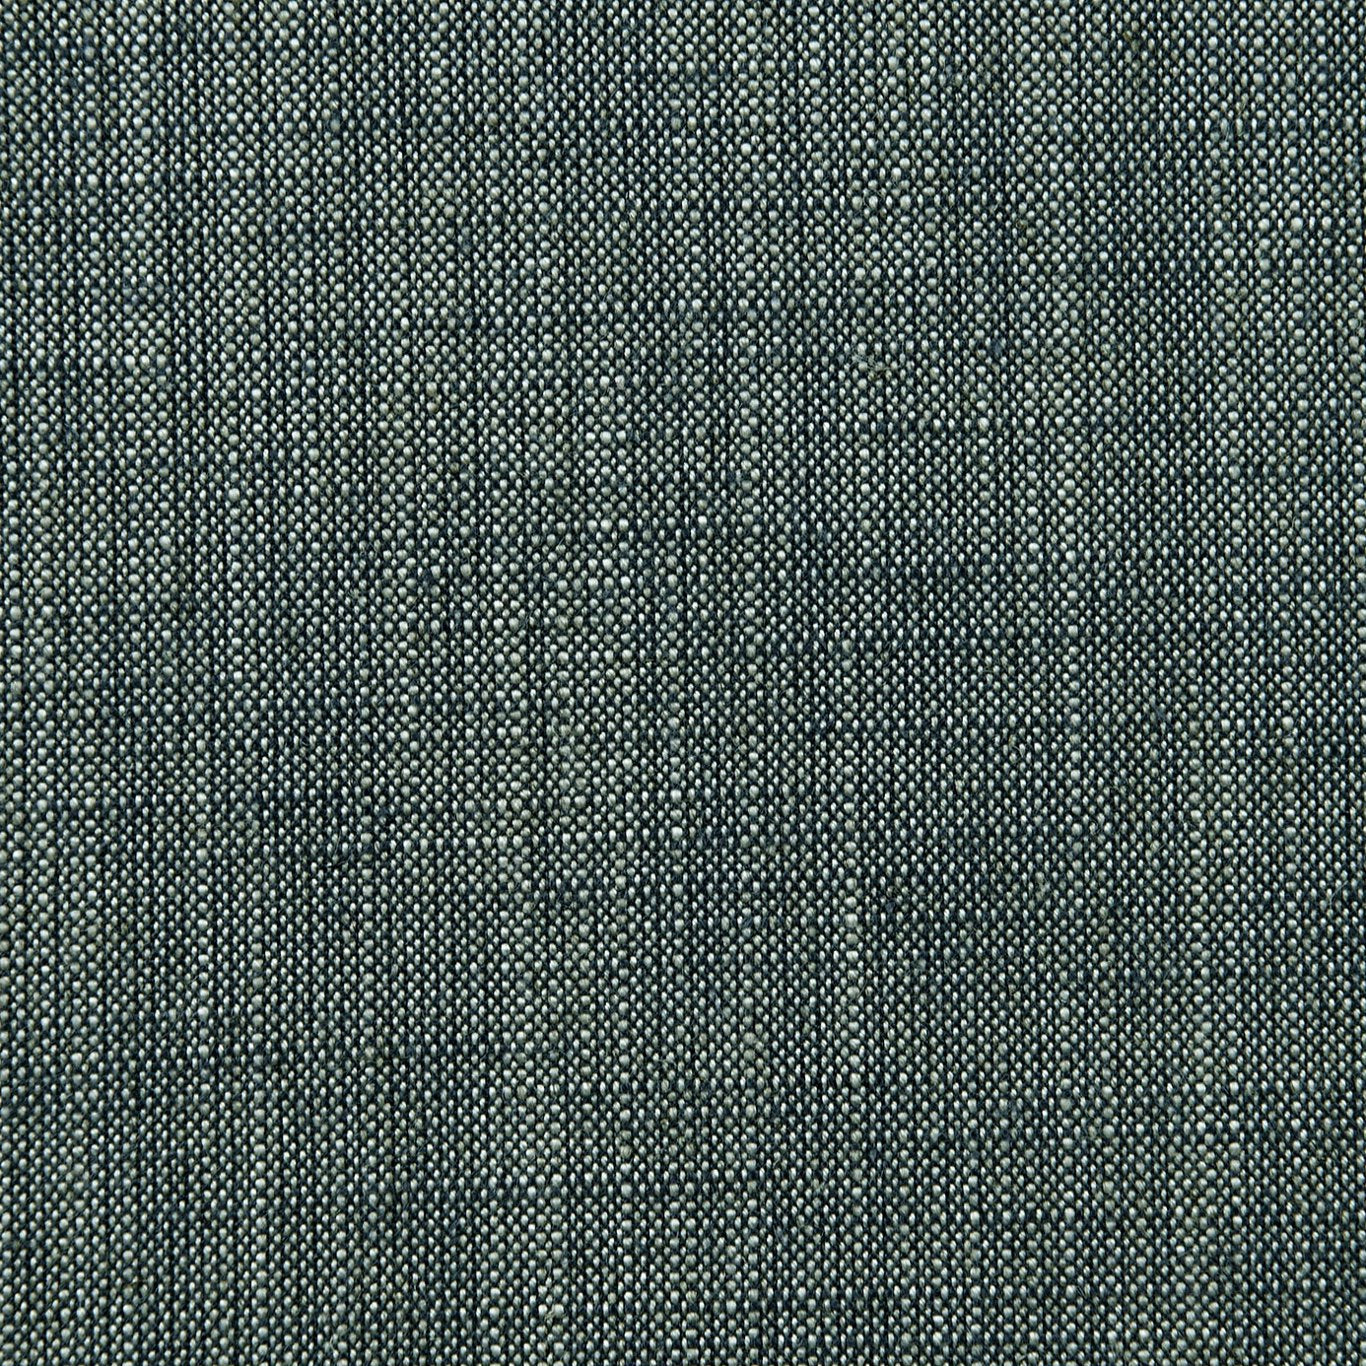 Biarritz Fabric by Clarke & Clarke - F0965/22 - Indigo